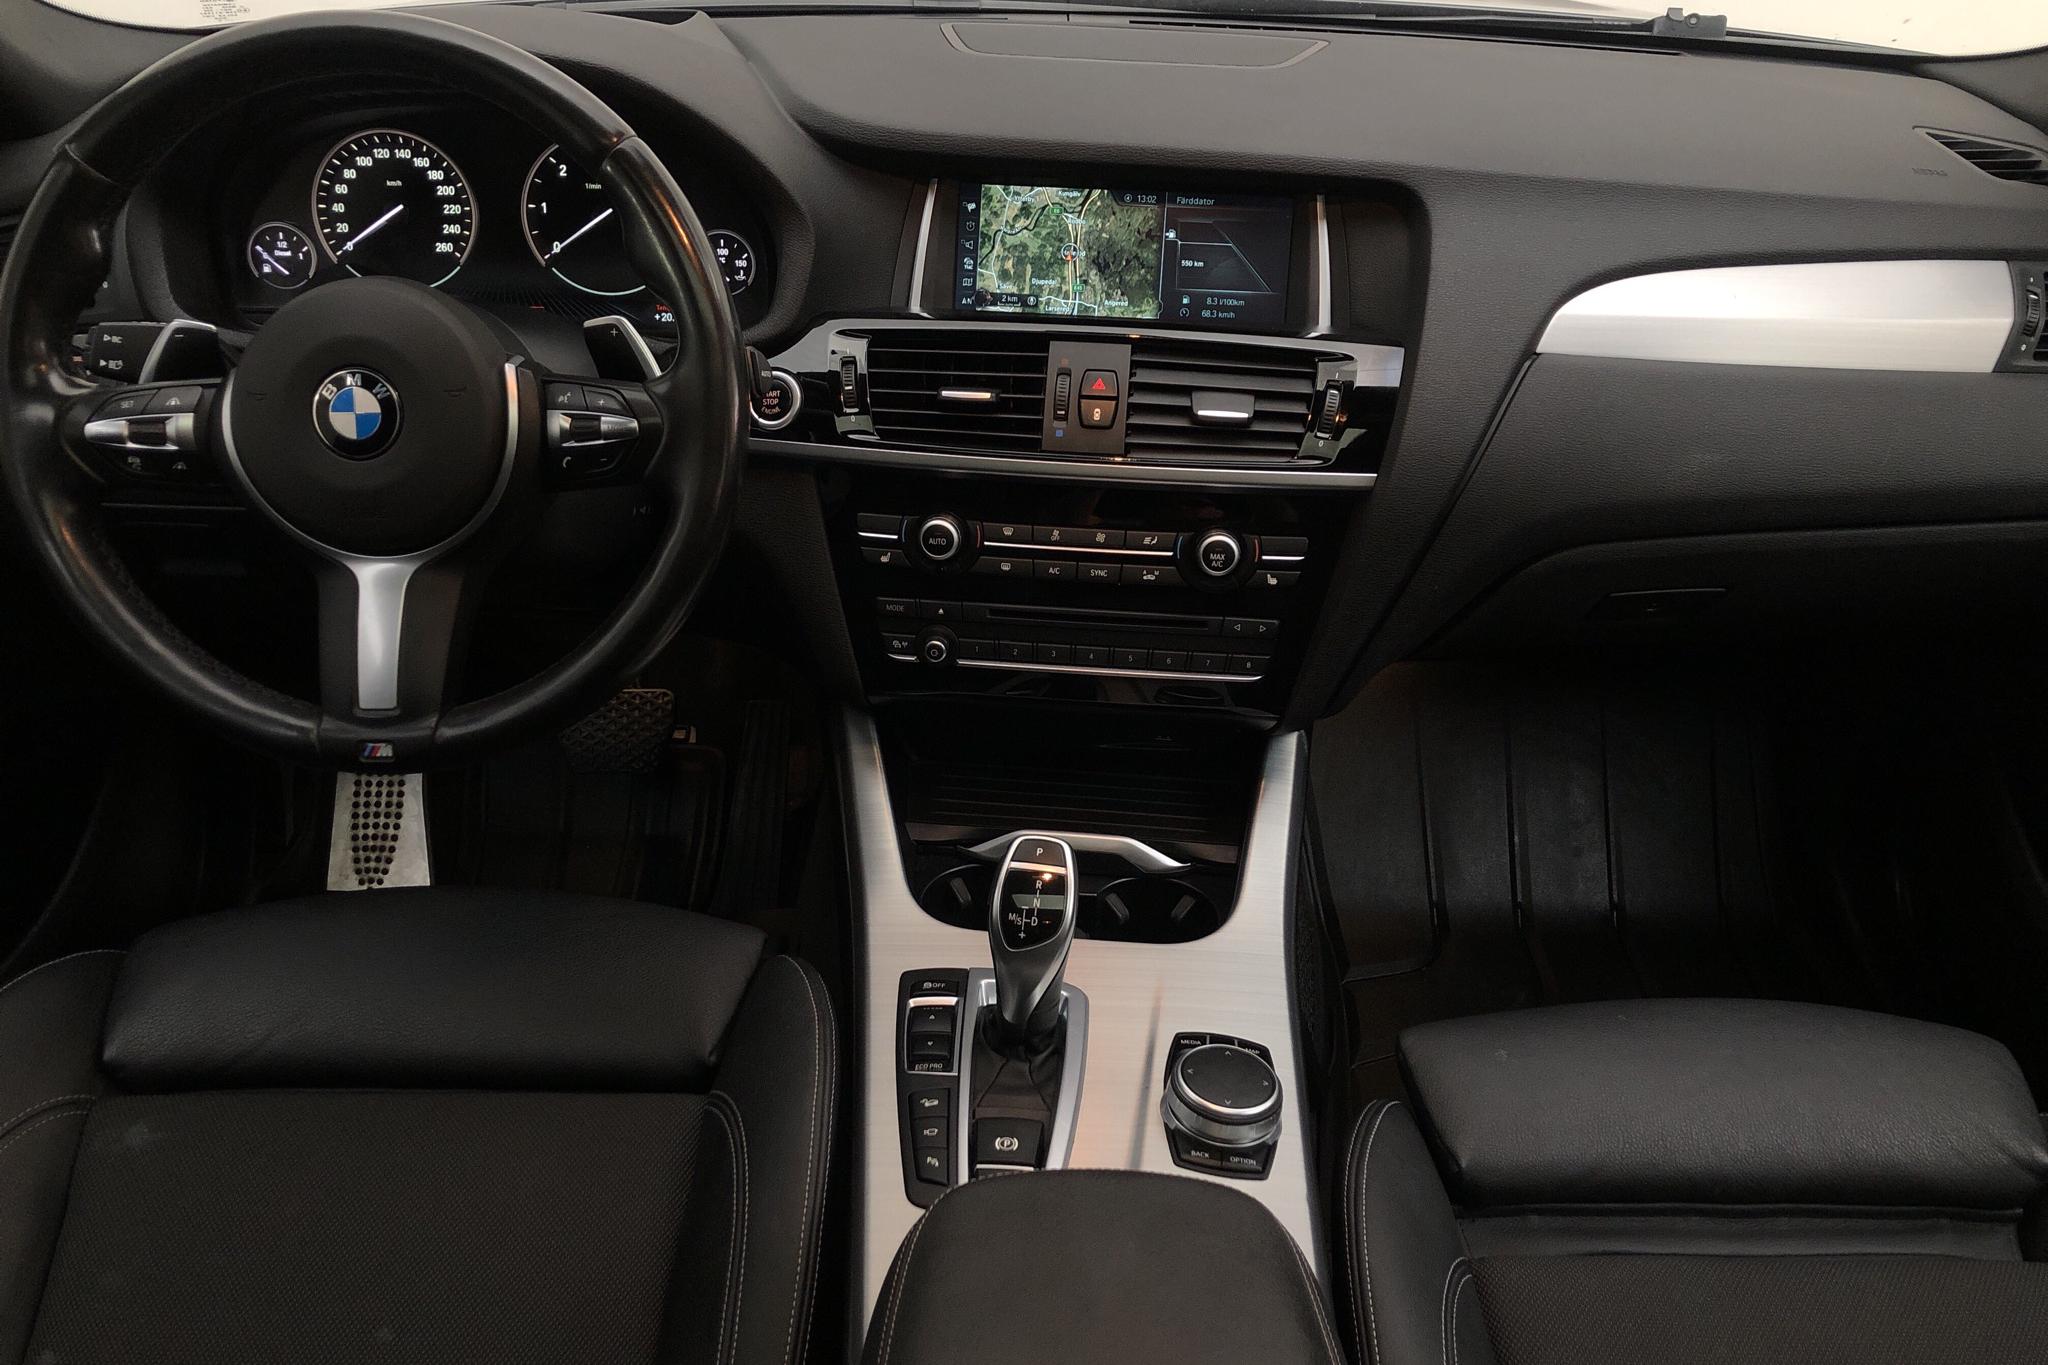 BMW X4 xDrive30d, F26 (258hk) - 127 290 km - Automatic - black - 2017